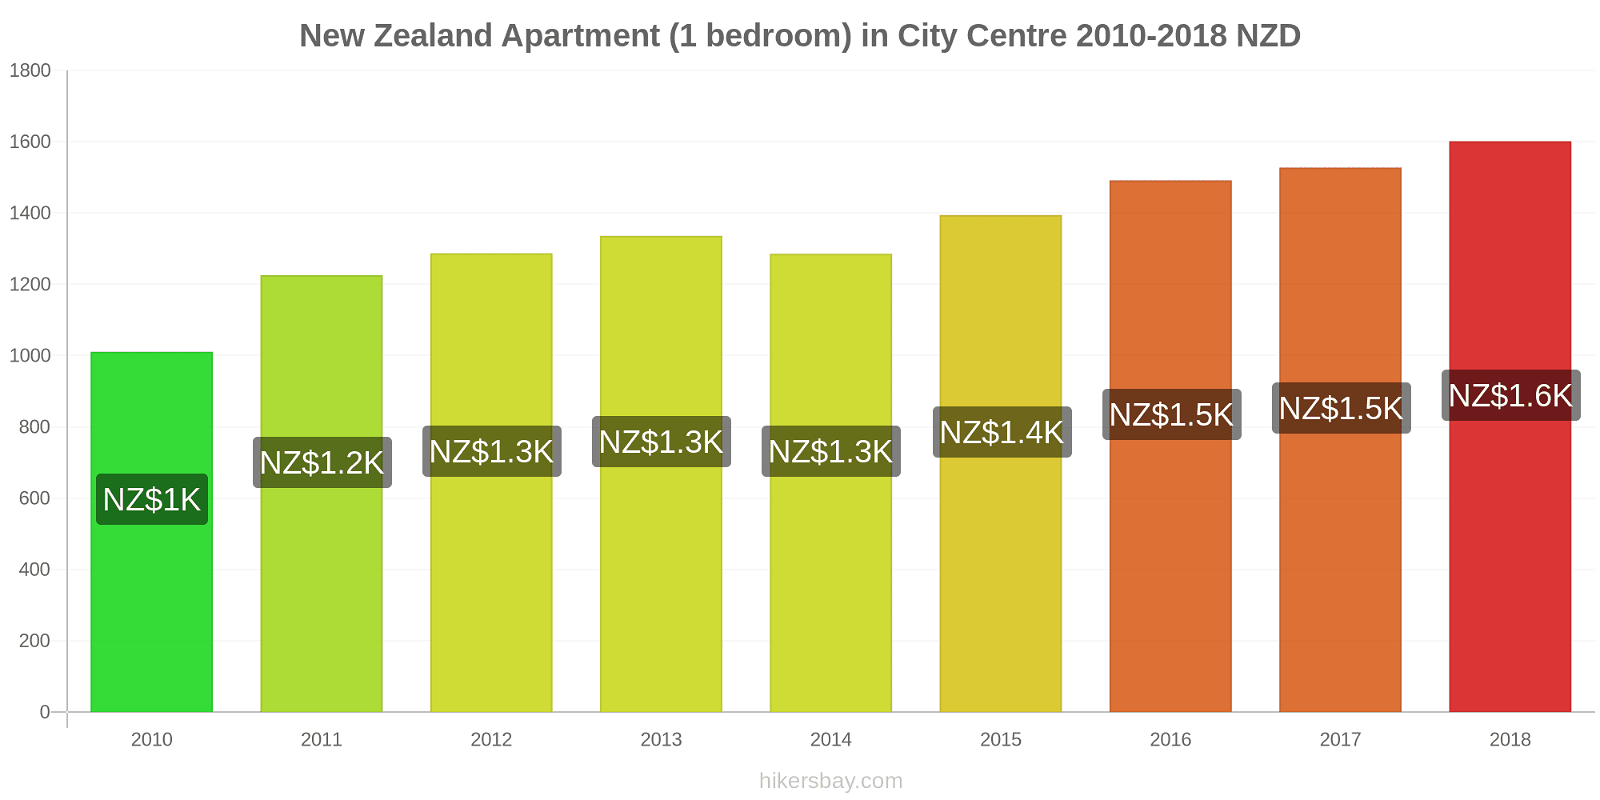 New Zealand price changes Apartment (1 bedroom) in city centre hikersbay.com